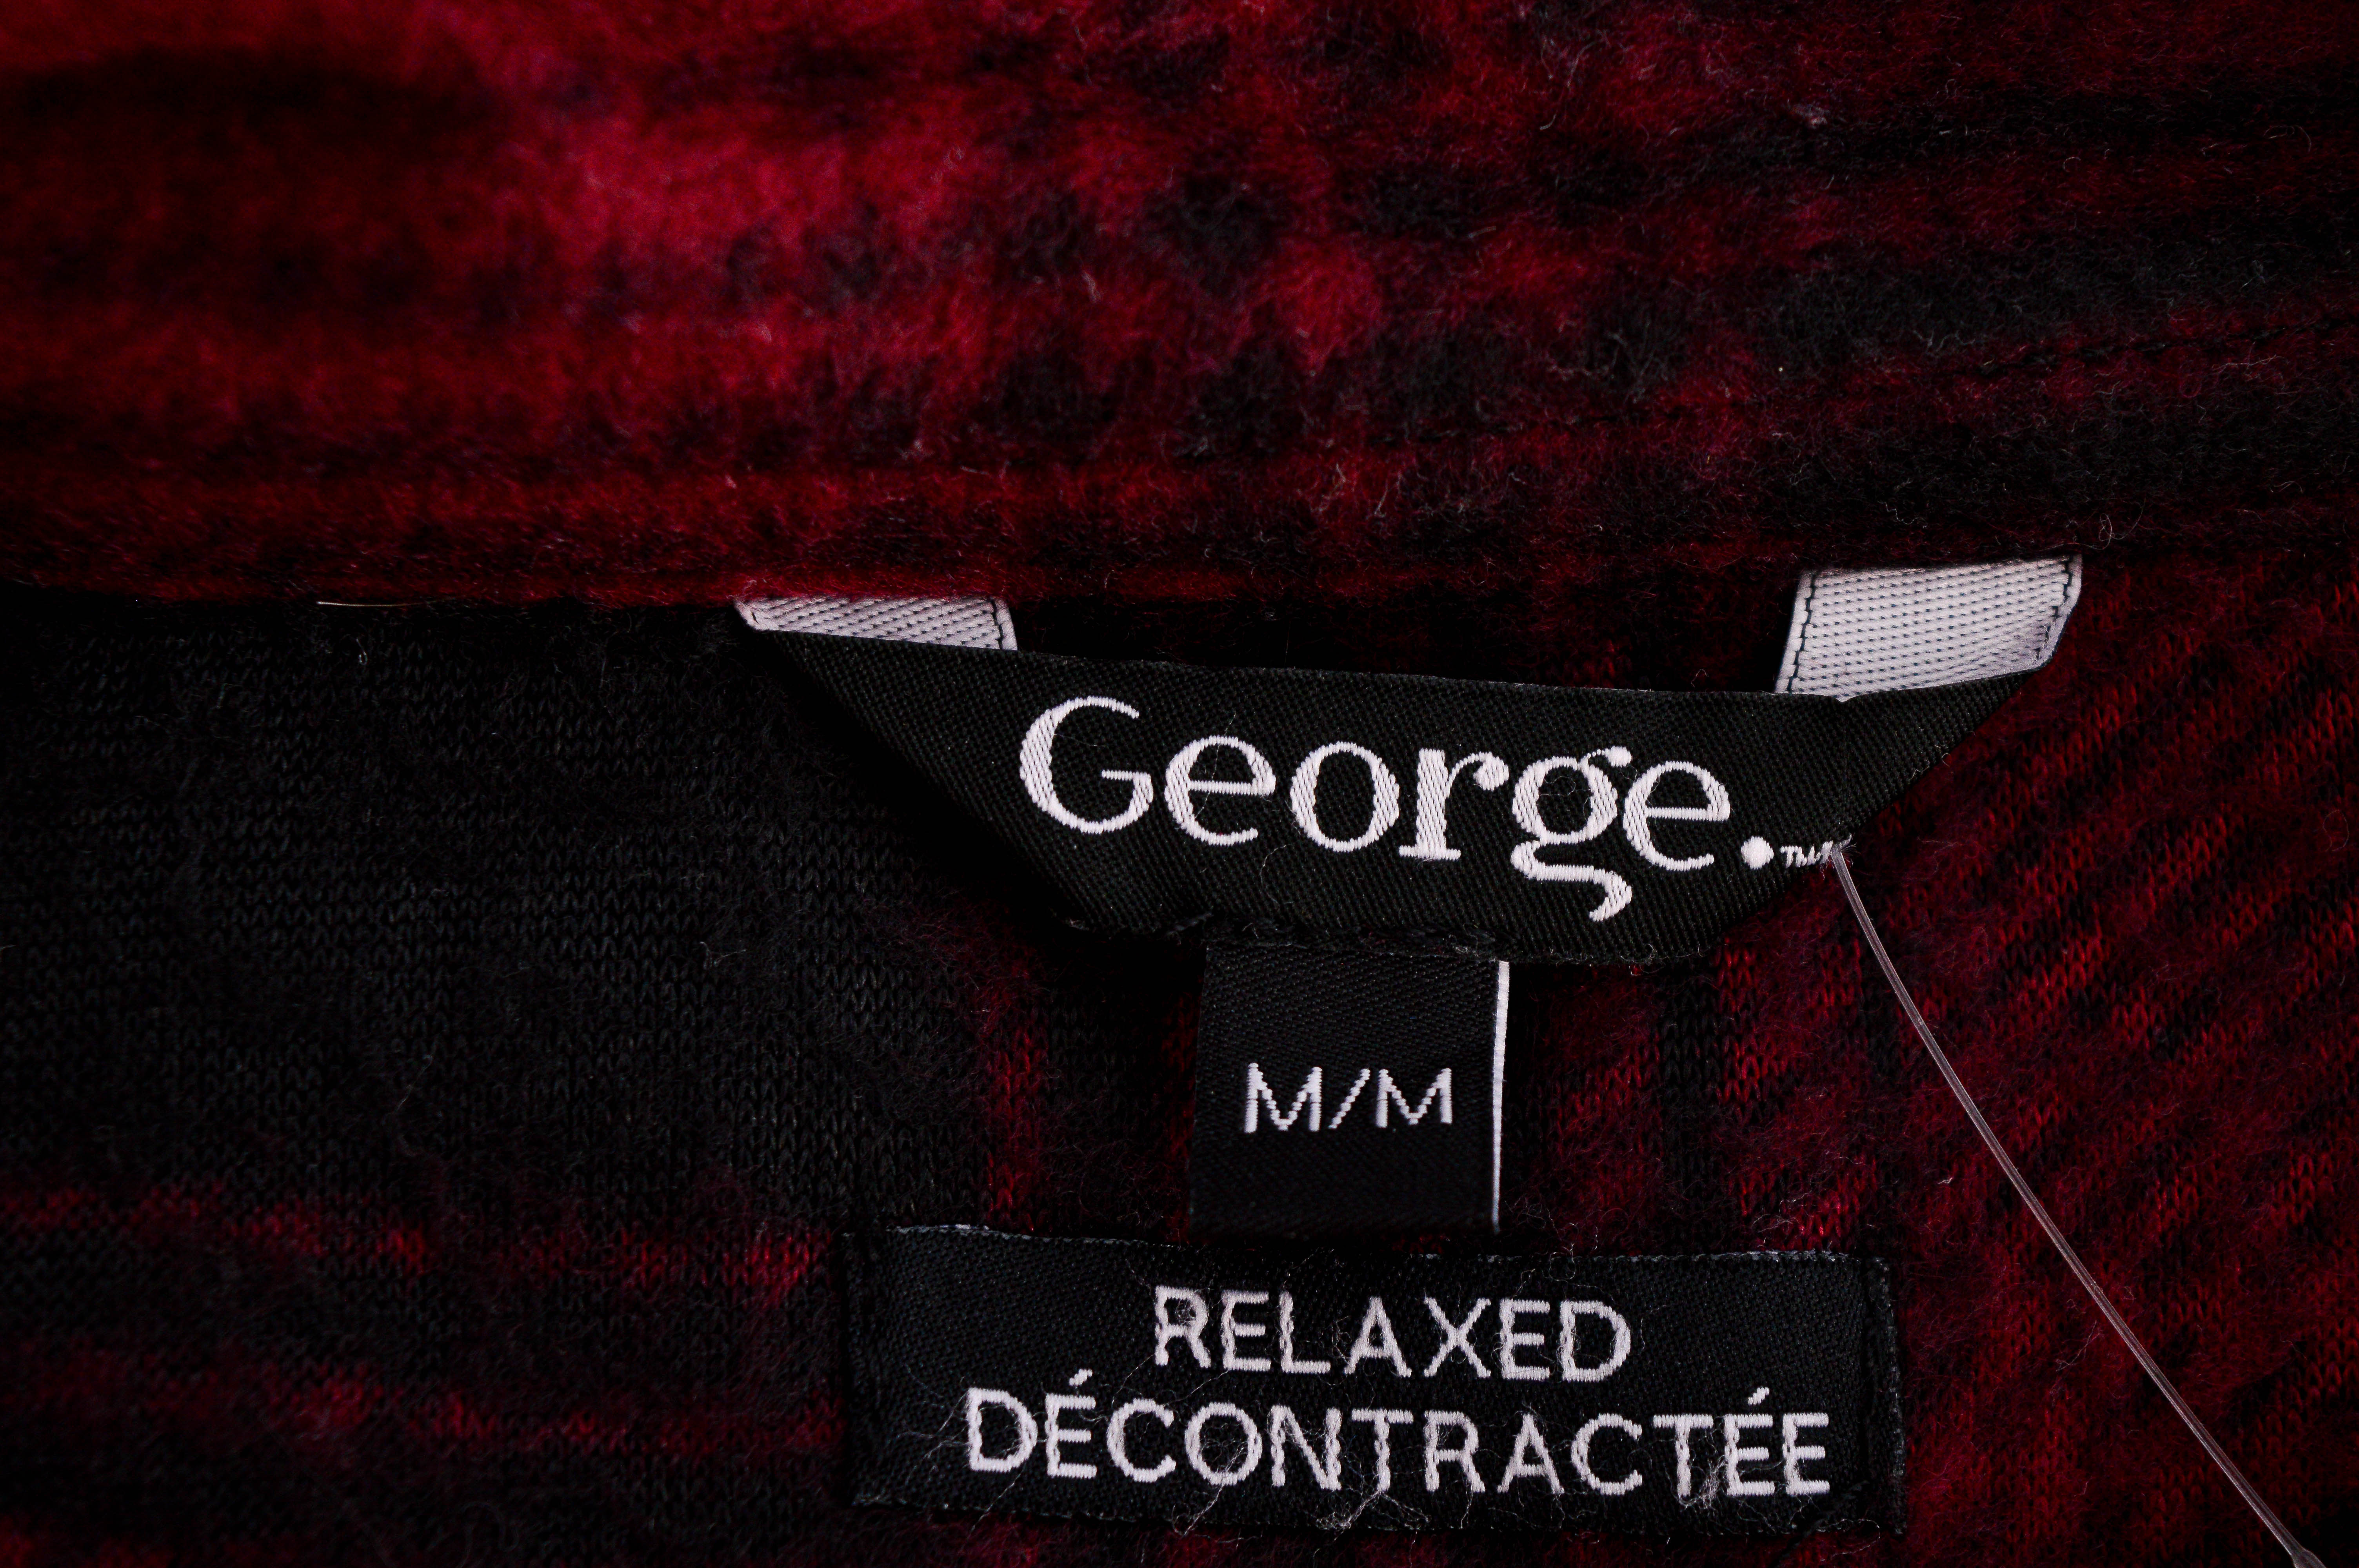 Ανδρικό ρούχο απο πολικό υφασμα - George. - 2